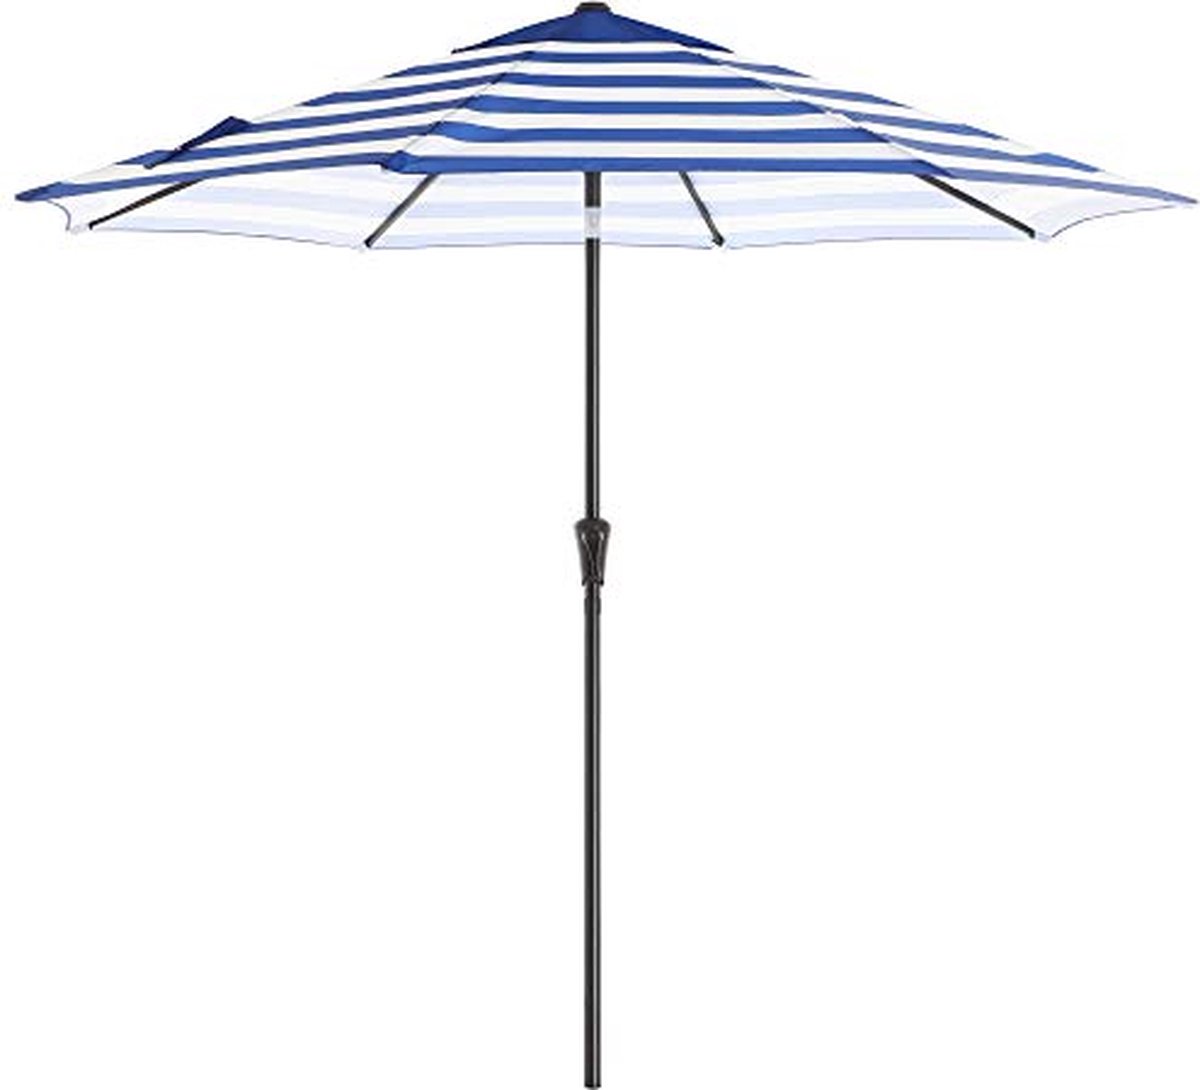 Parasol - Tuin parasol - Ø 290cm - Opvouwbaar, Met zwengel - Blauw wit